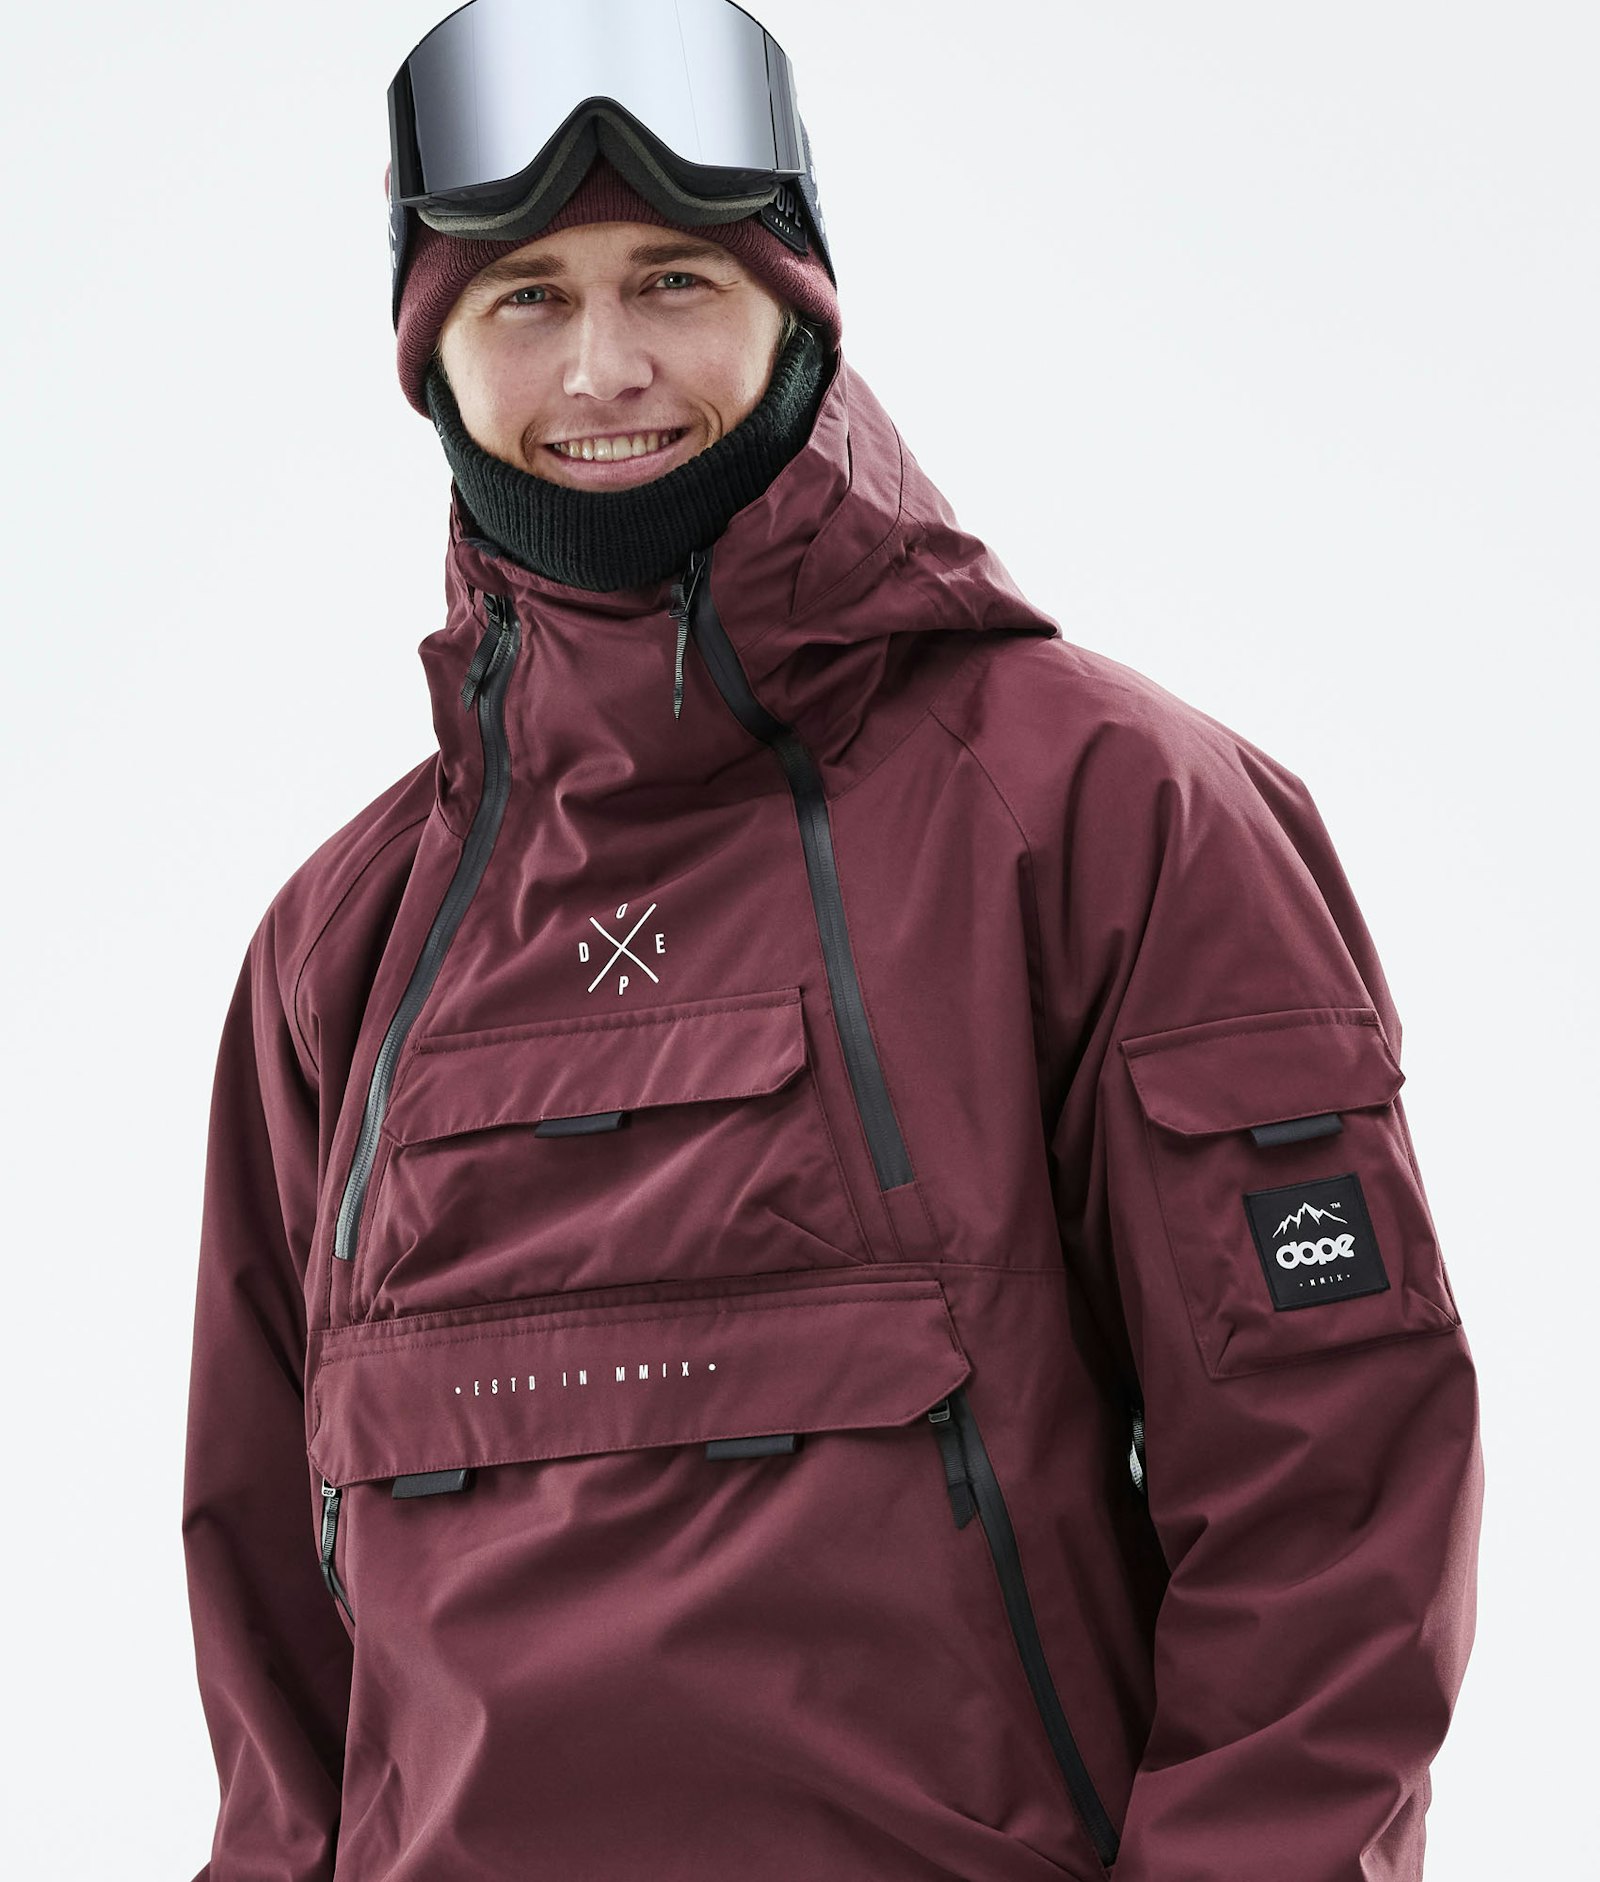 Akin 2019 Veste Snowboard Homme Burgundy